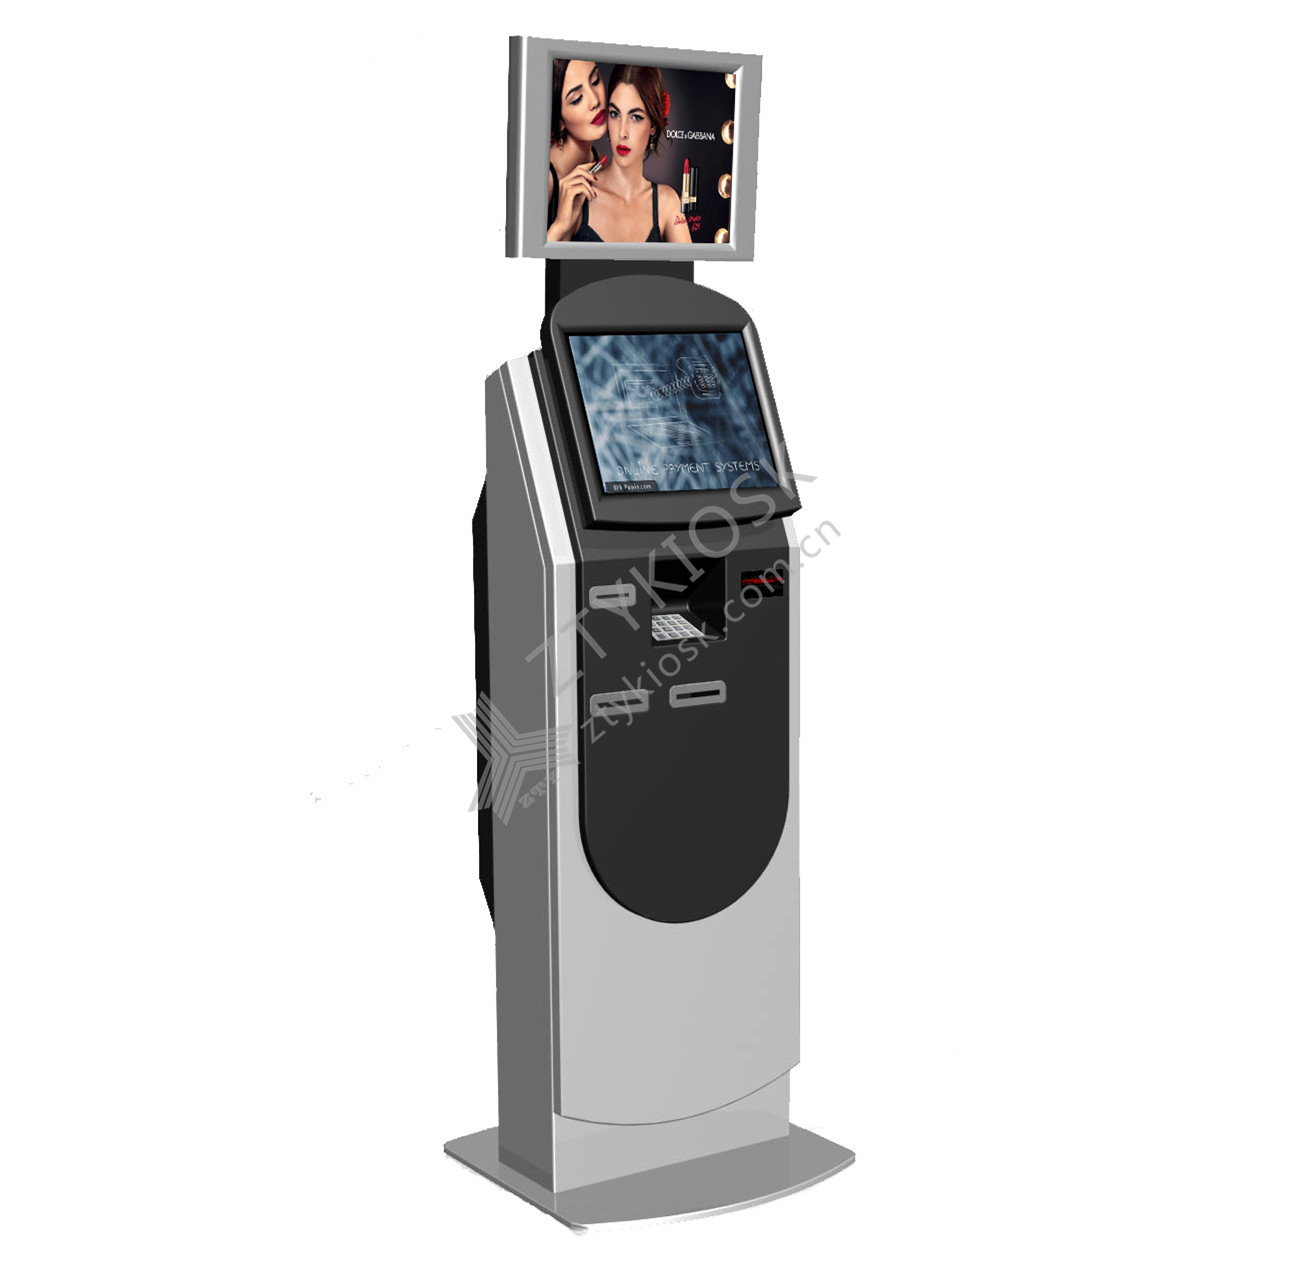 Dual-screen Cash Payment Kiosk